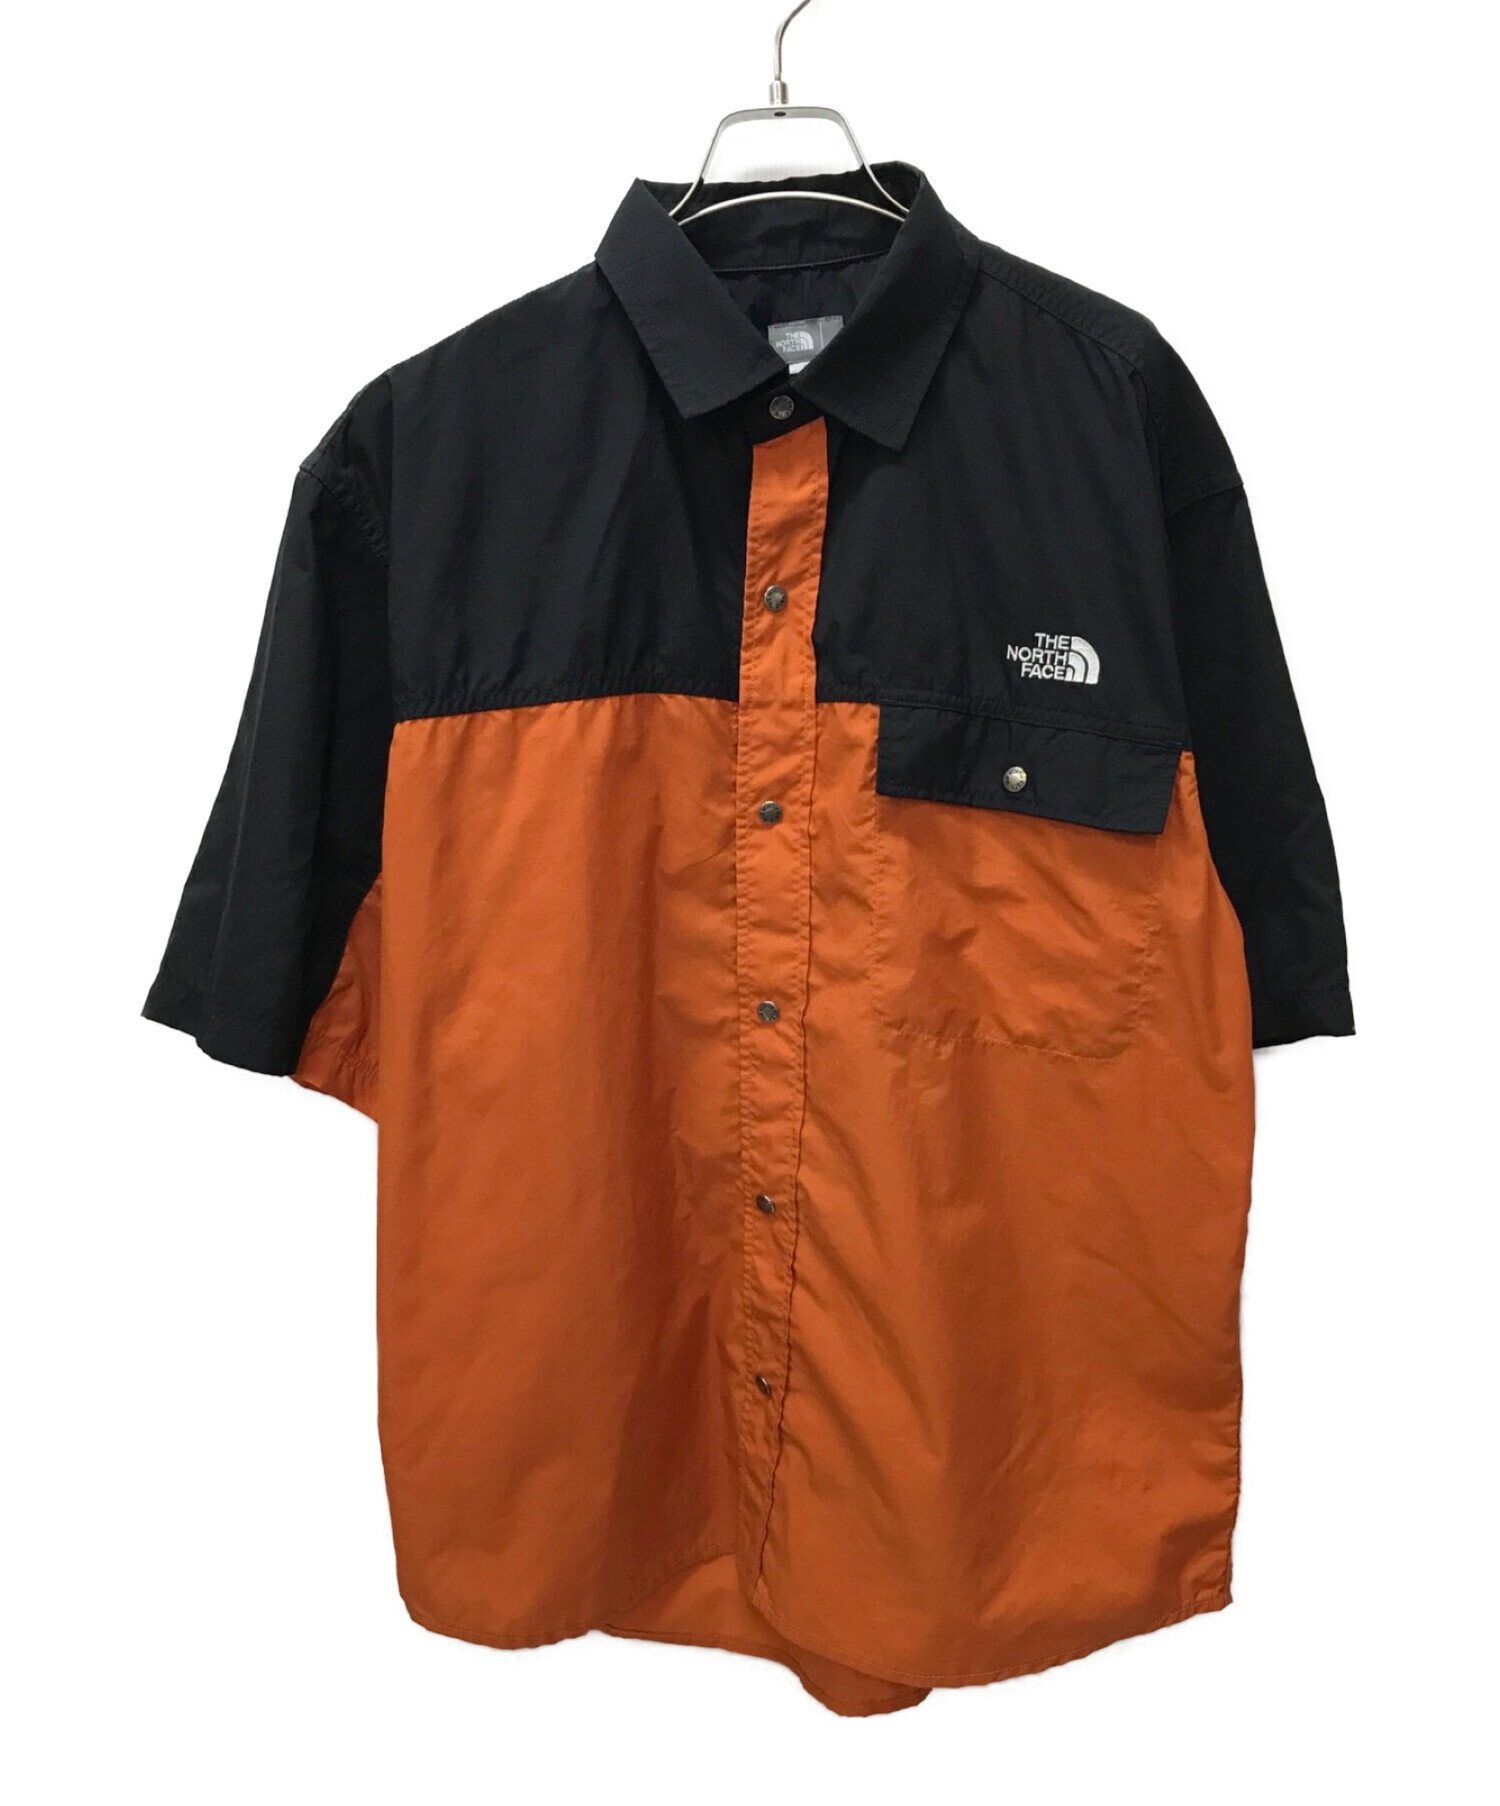 THE NORTH FACE (ザ ノース フェイス) S/S Nuptse Shirt / ショートスリーブ ヌプシシャツ オレンジ×ブラック  サイズ:XL